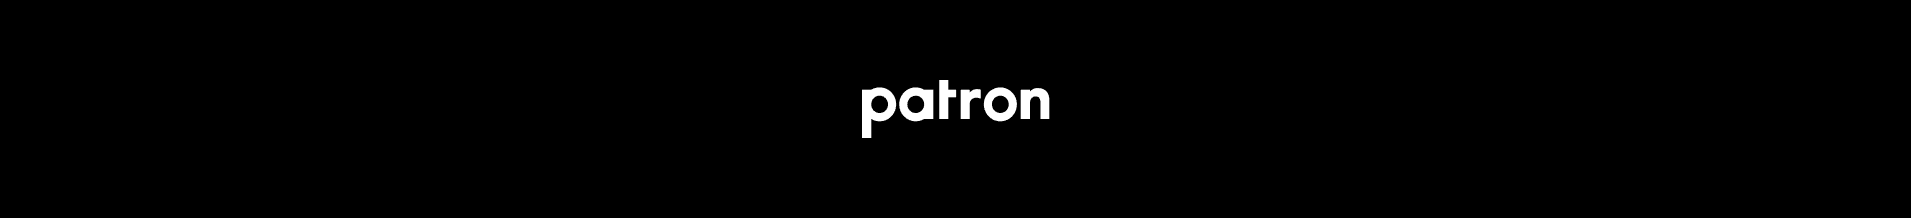 PATRON-NFT 배너